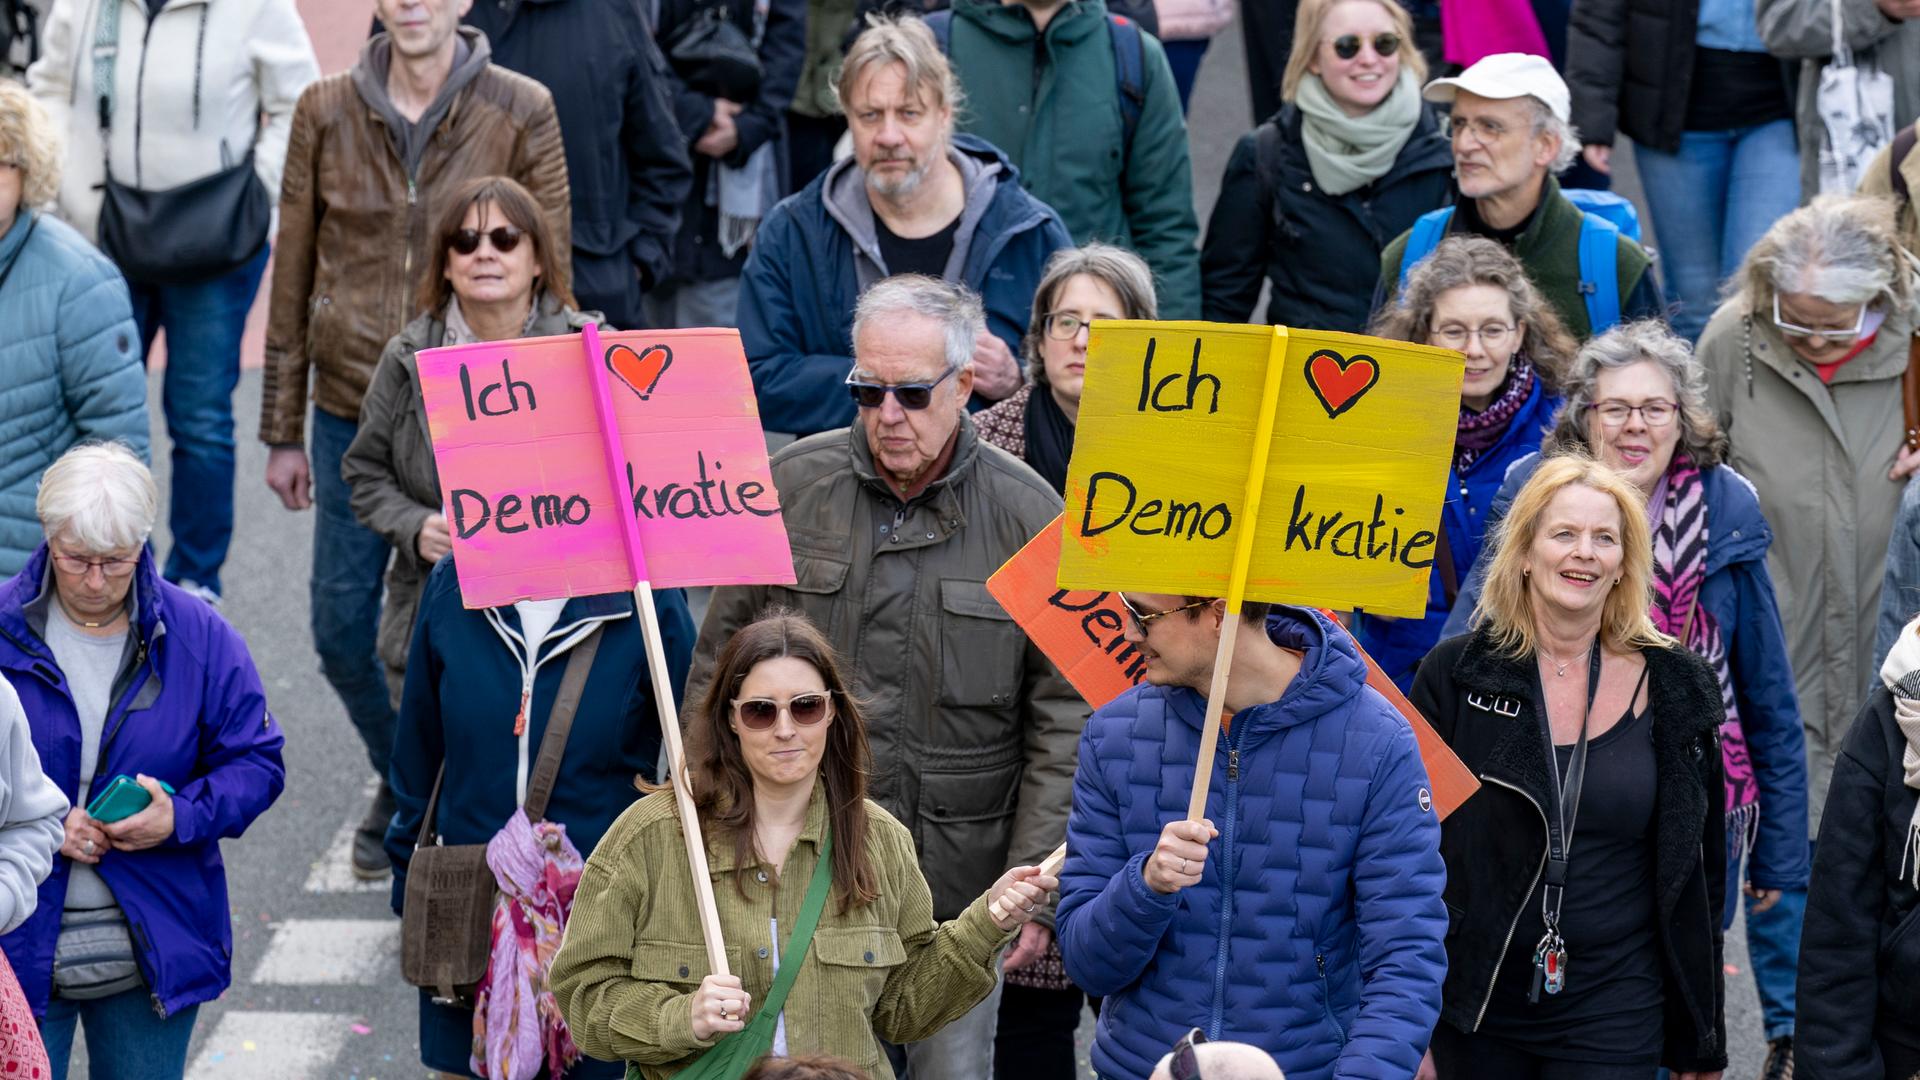 Gesellschaft - Proteste gegen Rechtsextremismus und erstarkten der AfD reißen auch nach acht Wochen nicht ab - 15.000 versammeln sich in Duisburg